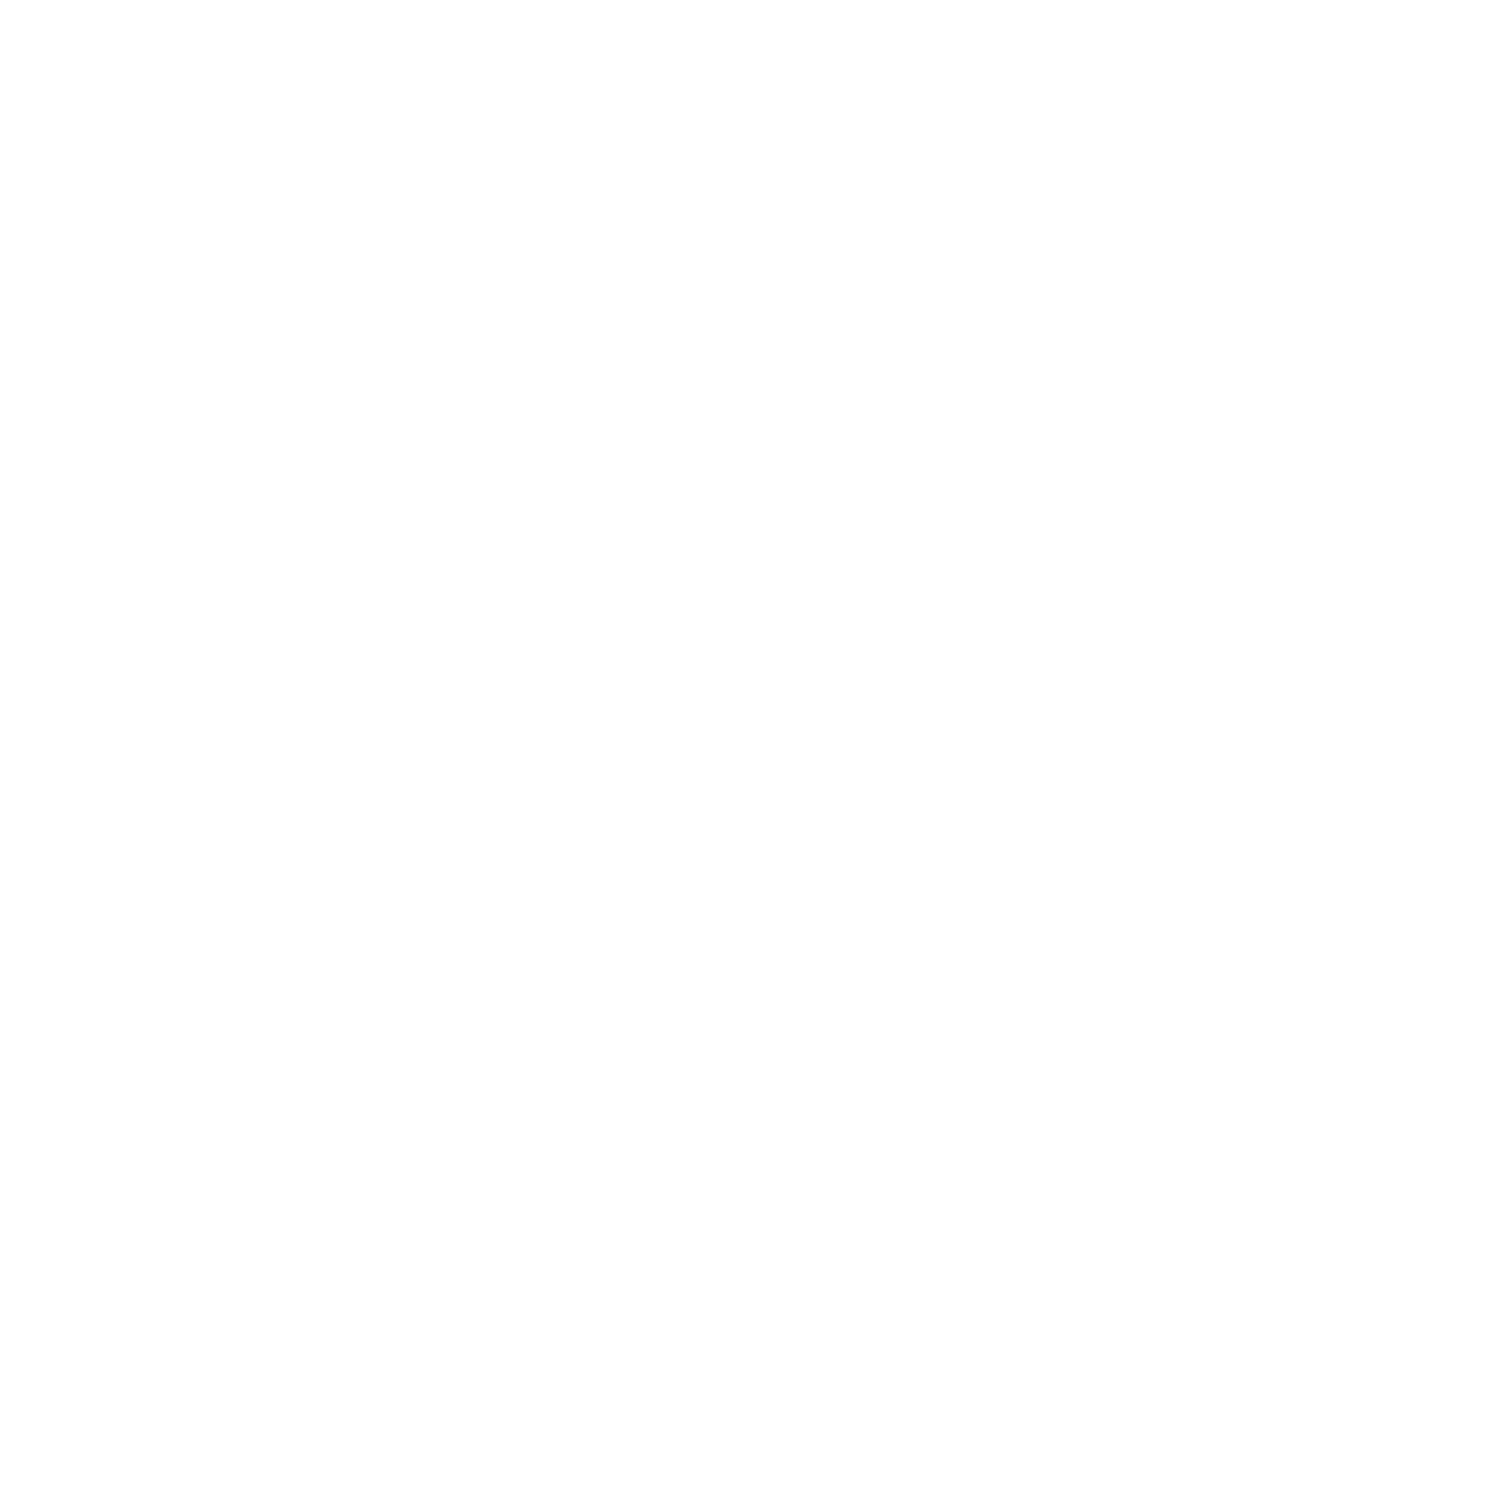 The Vineyard at High Holly